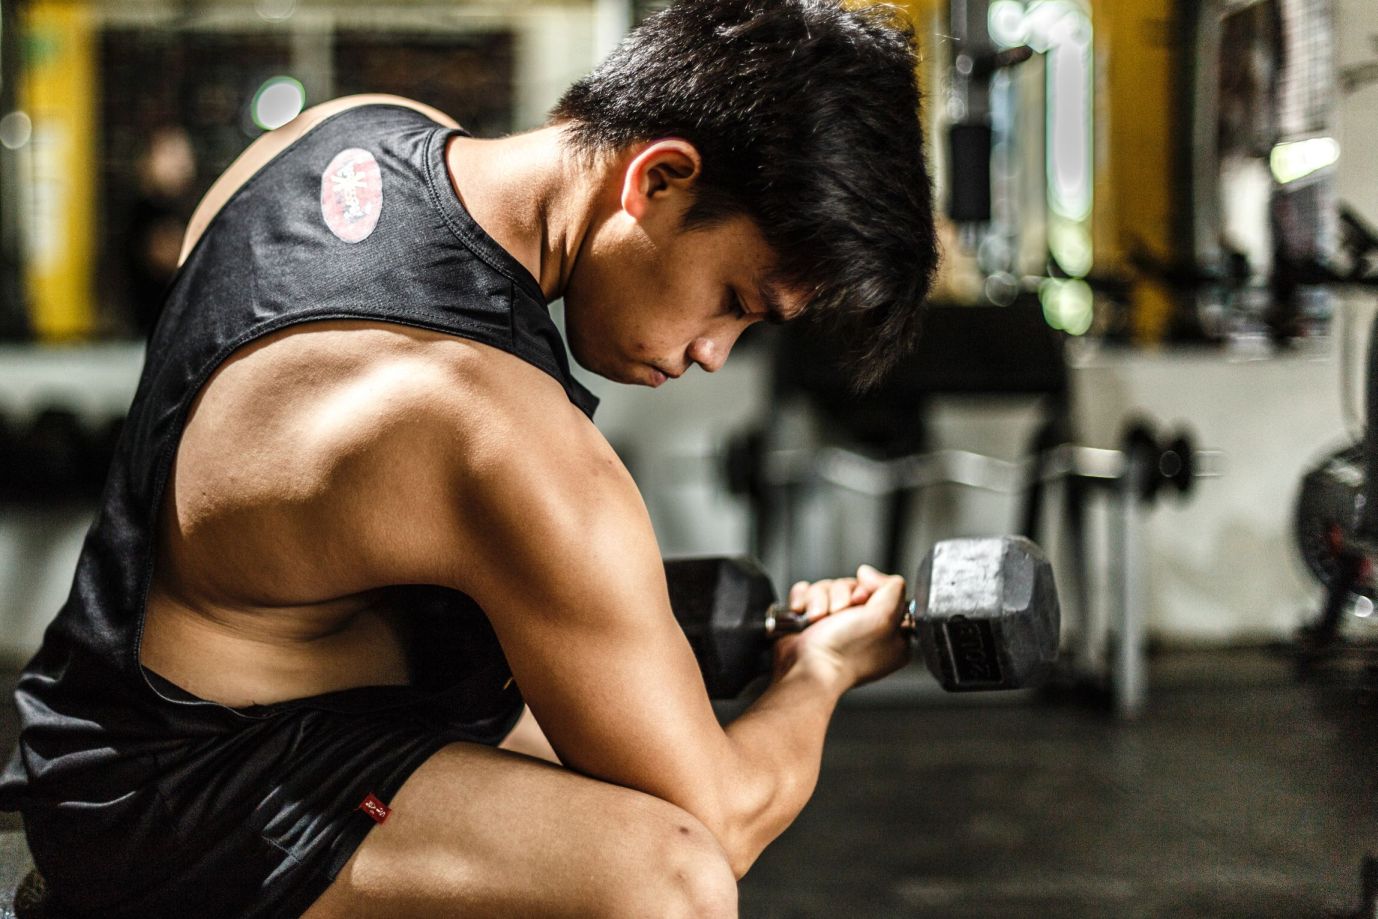 Dobry trening na biceps jak ma wyglądać ?